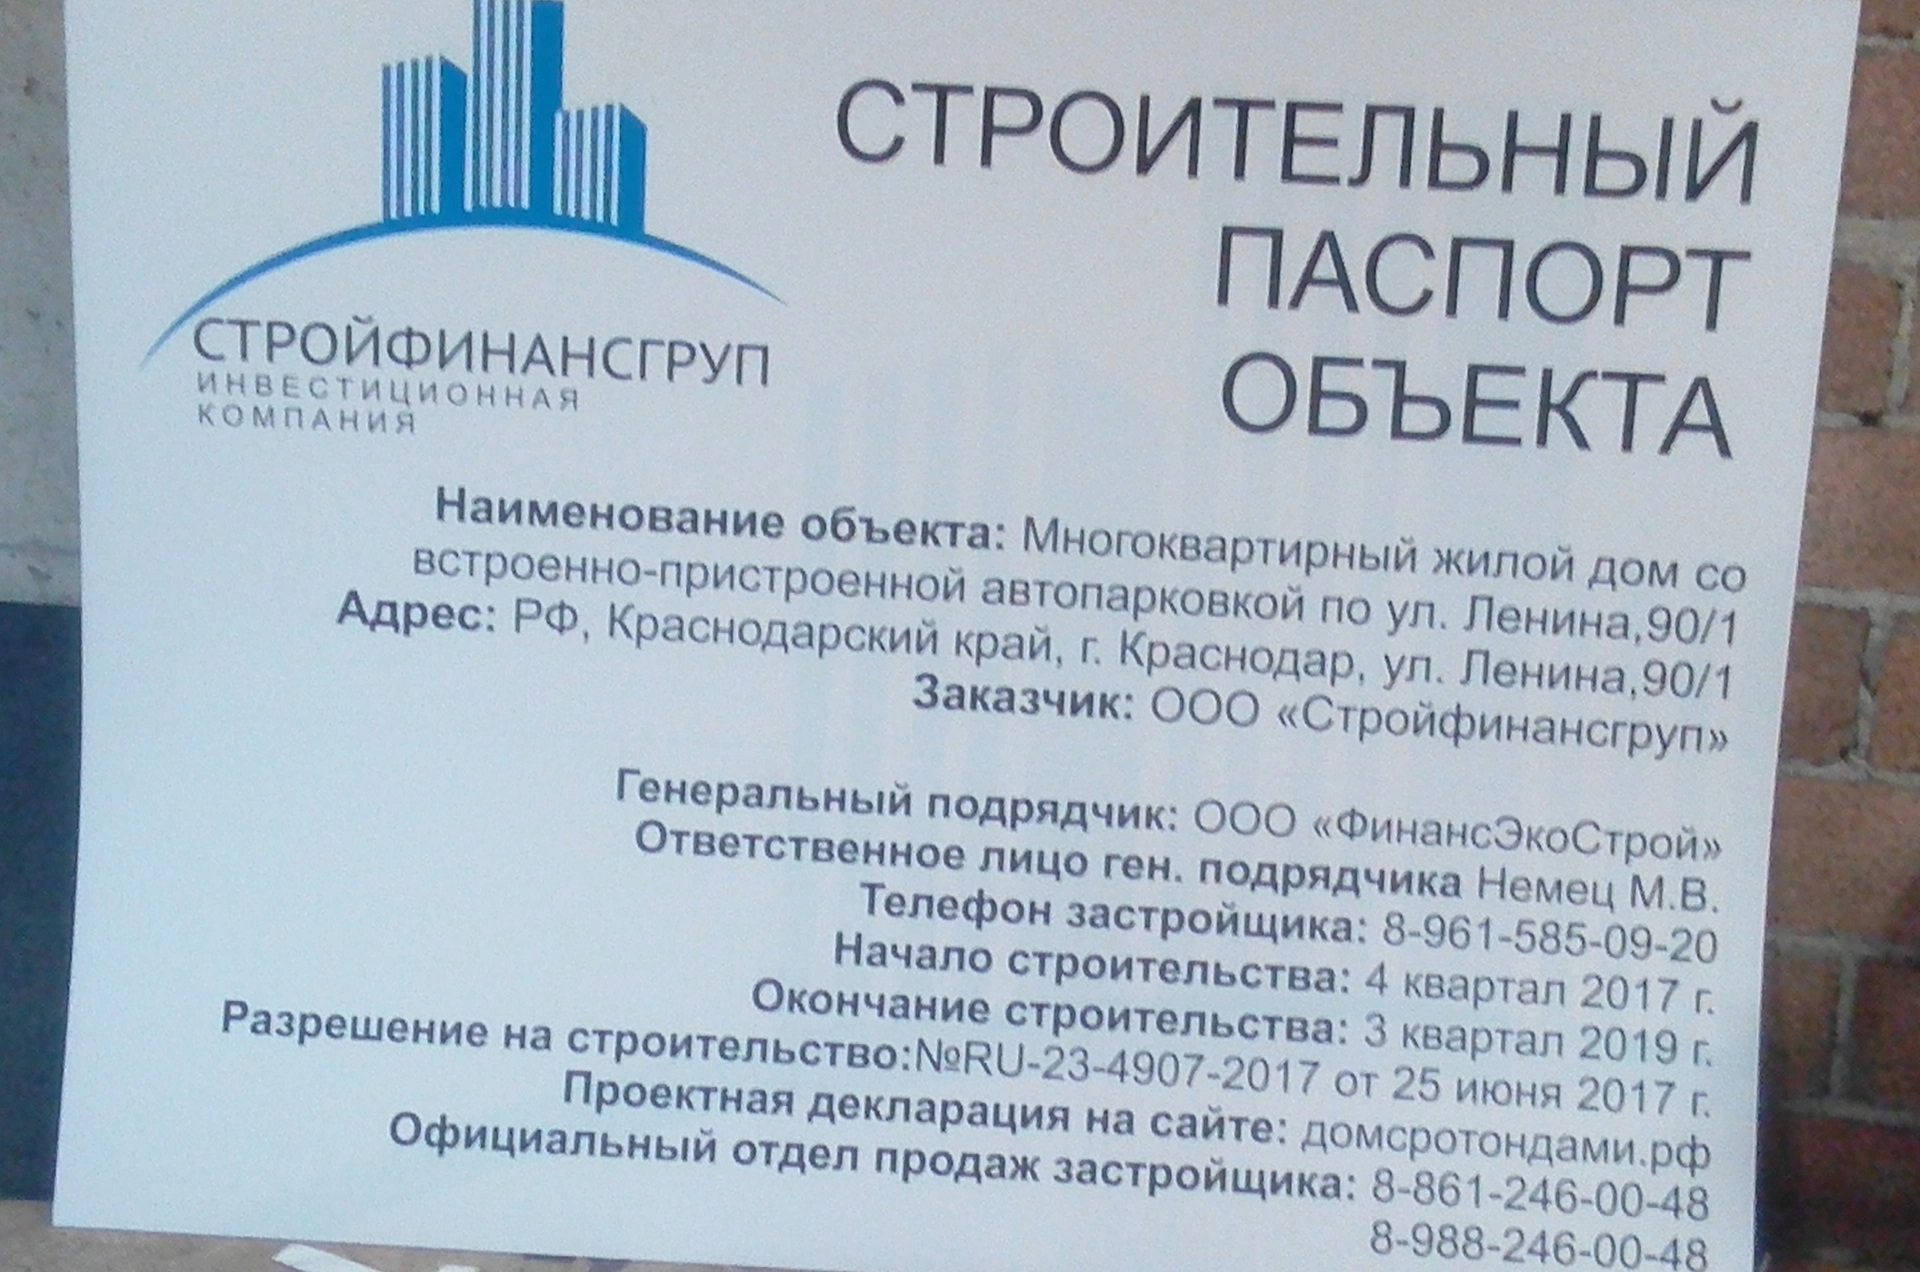 Рекламная табличка. Изготовление рекламных материалов в типографии Quickprint г. Краснодар